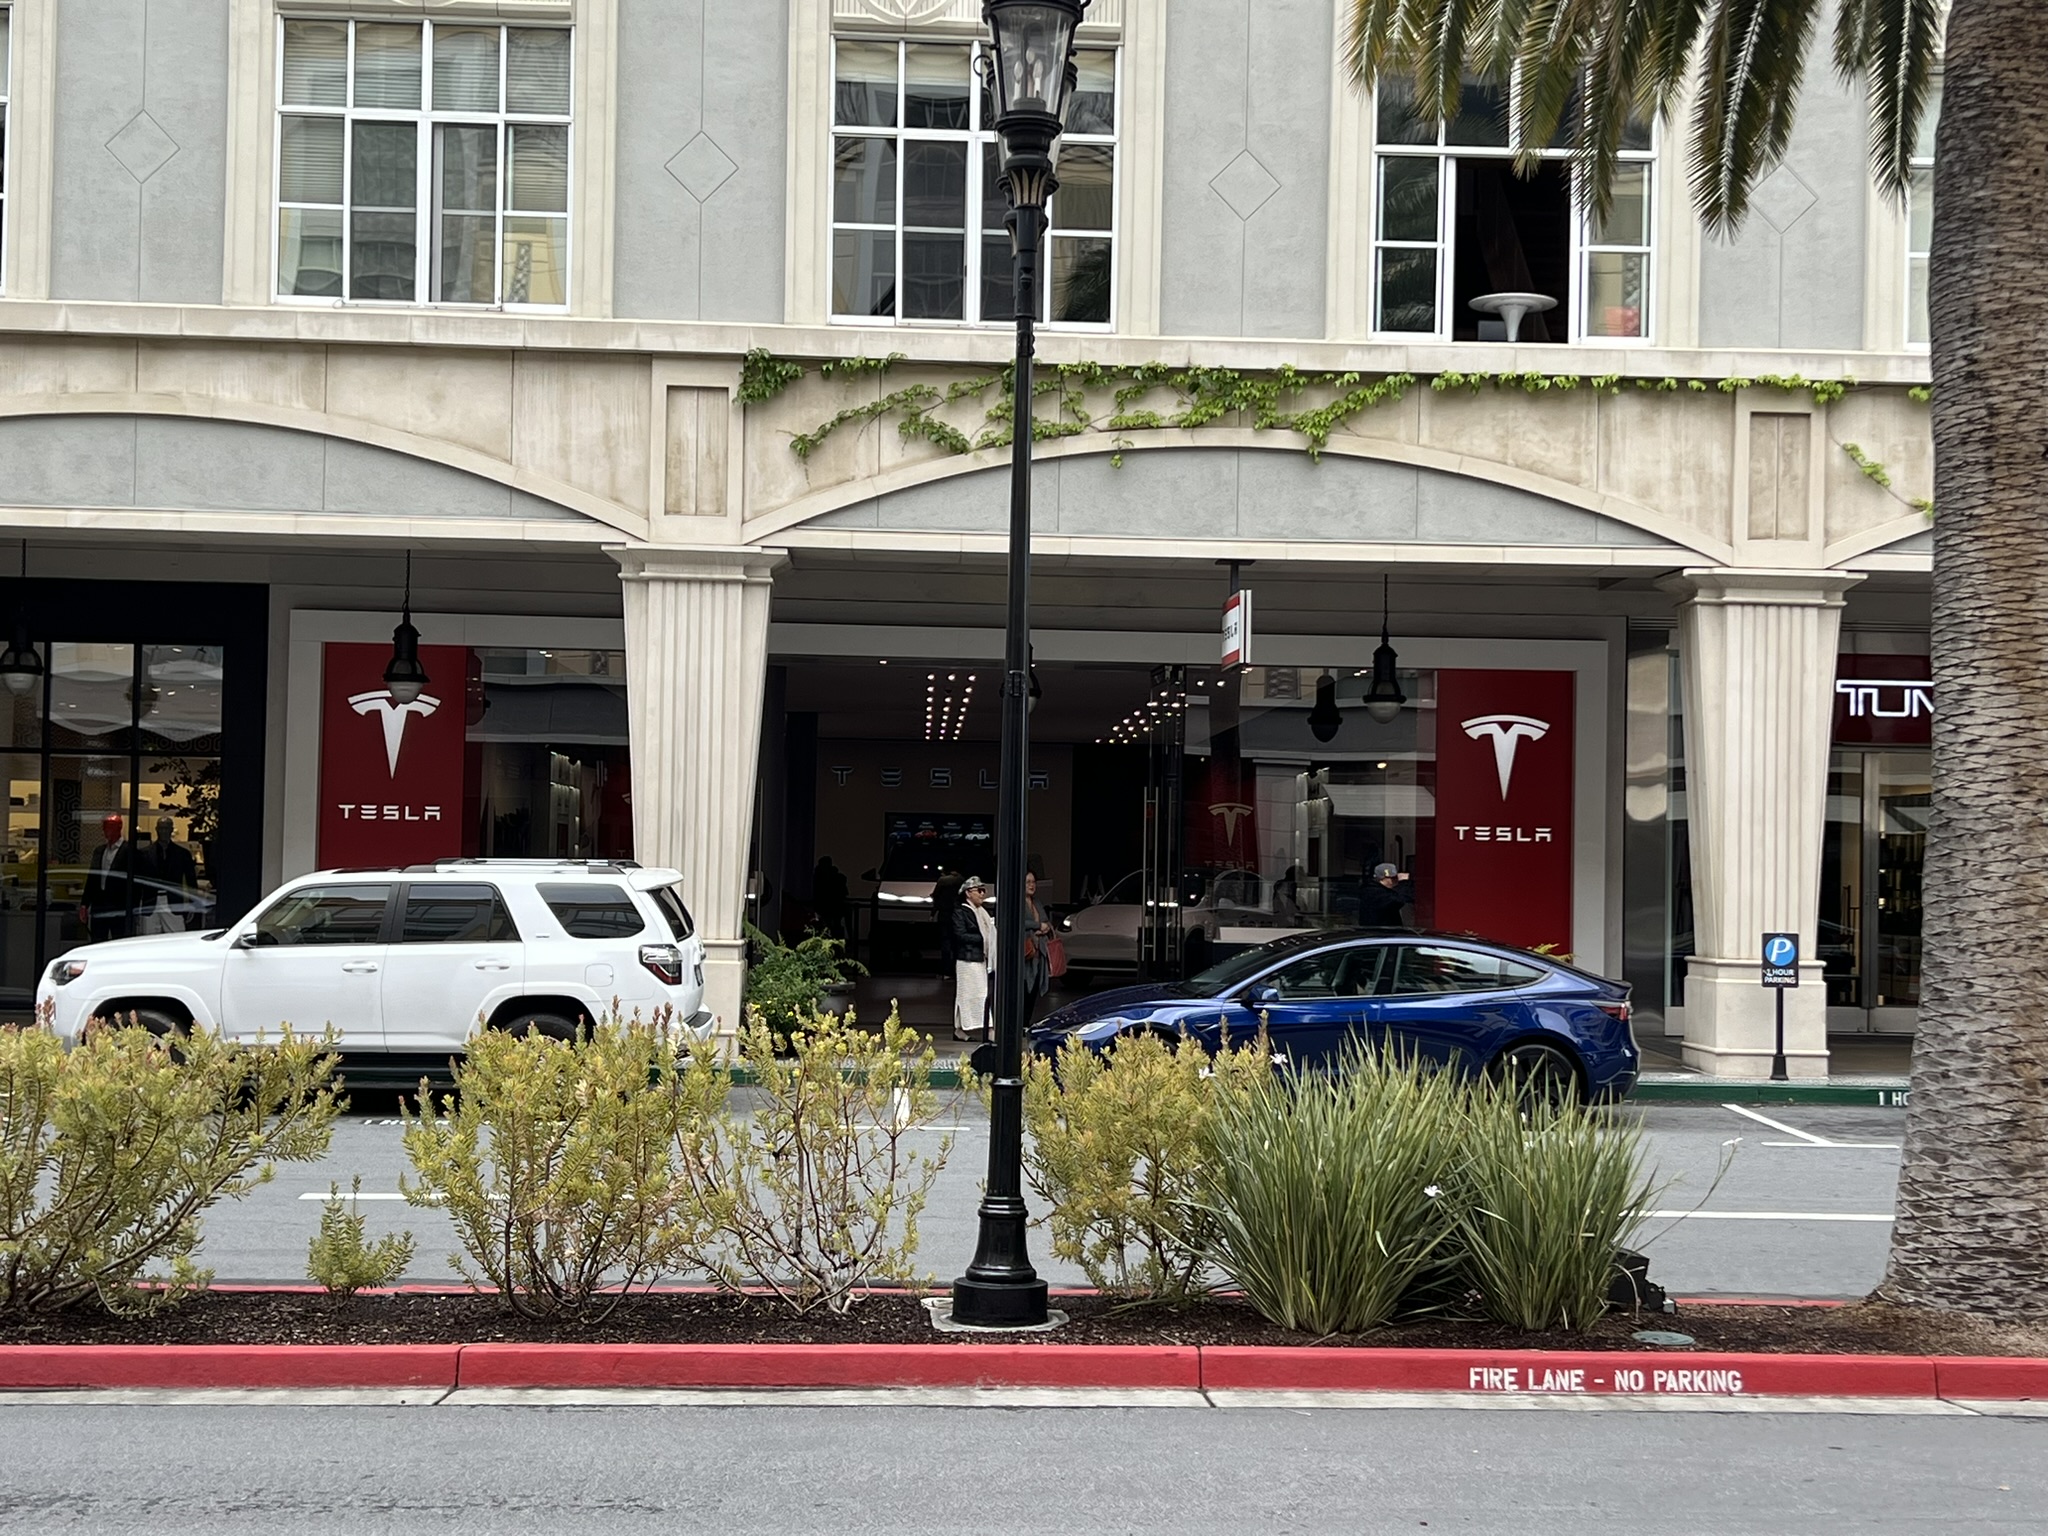 这里居然还有 Tesla 的销售门店